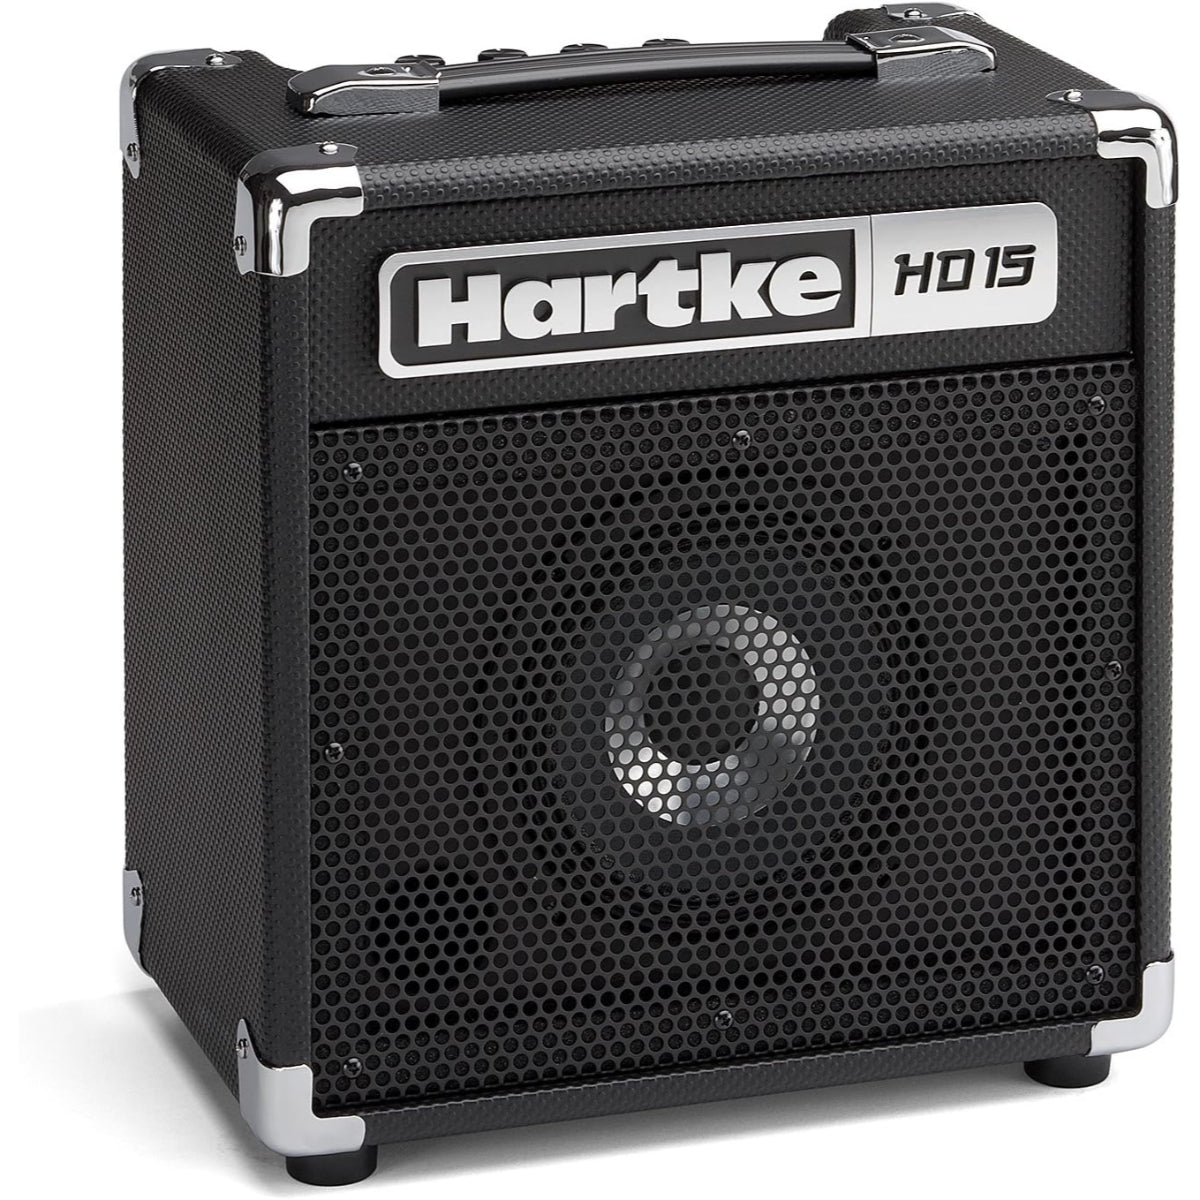 Hartke HD15 15W 1x6.5in Bass Combo Amplifier